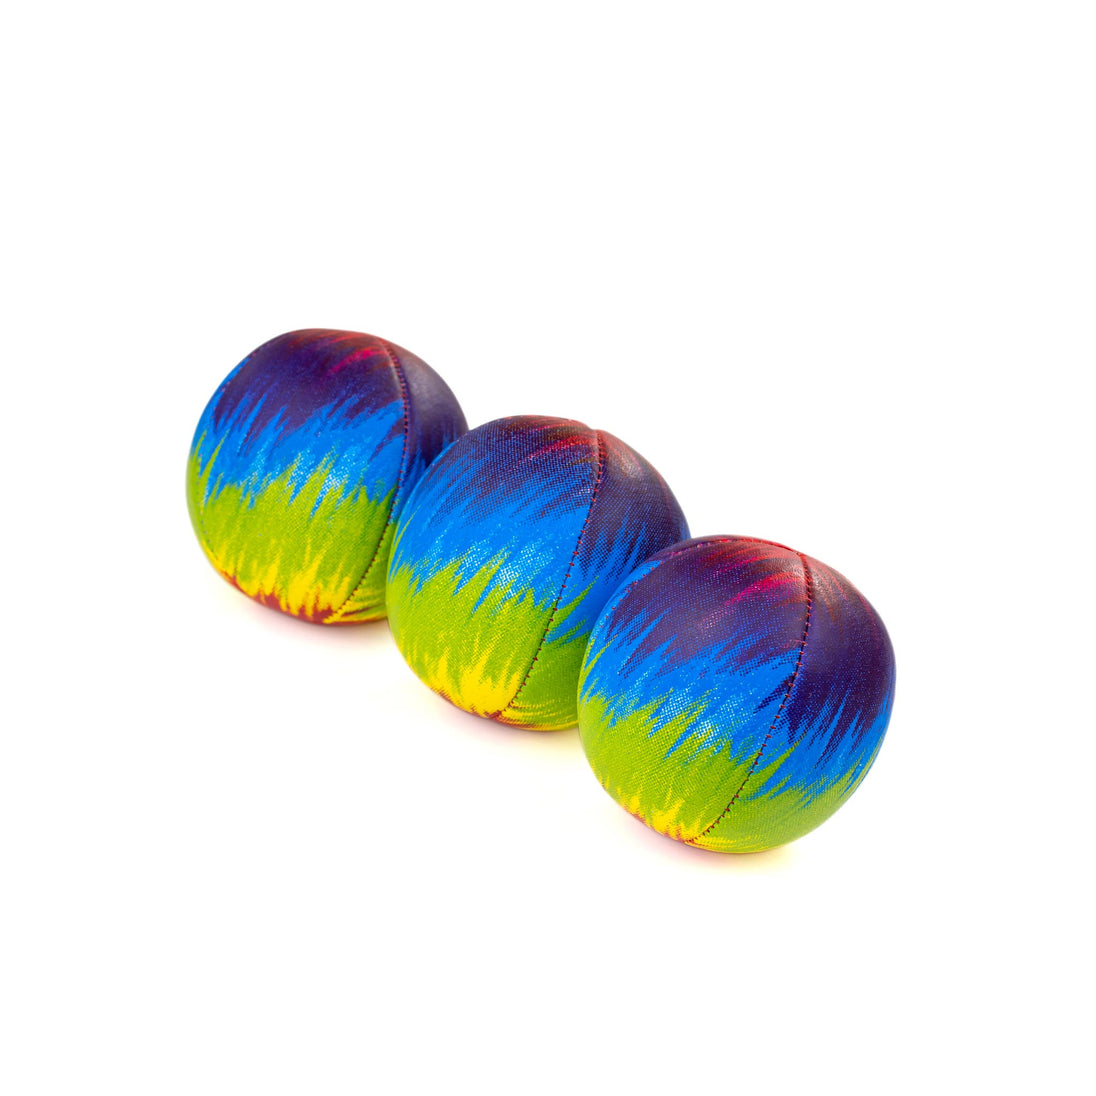 3 Festival Tye Dye Swirls - Red / Yellow / Blue / Green Wavey Stripe upside down